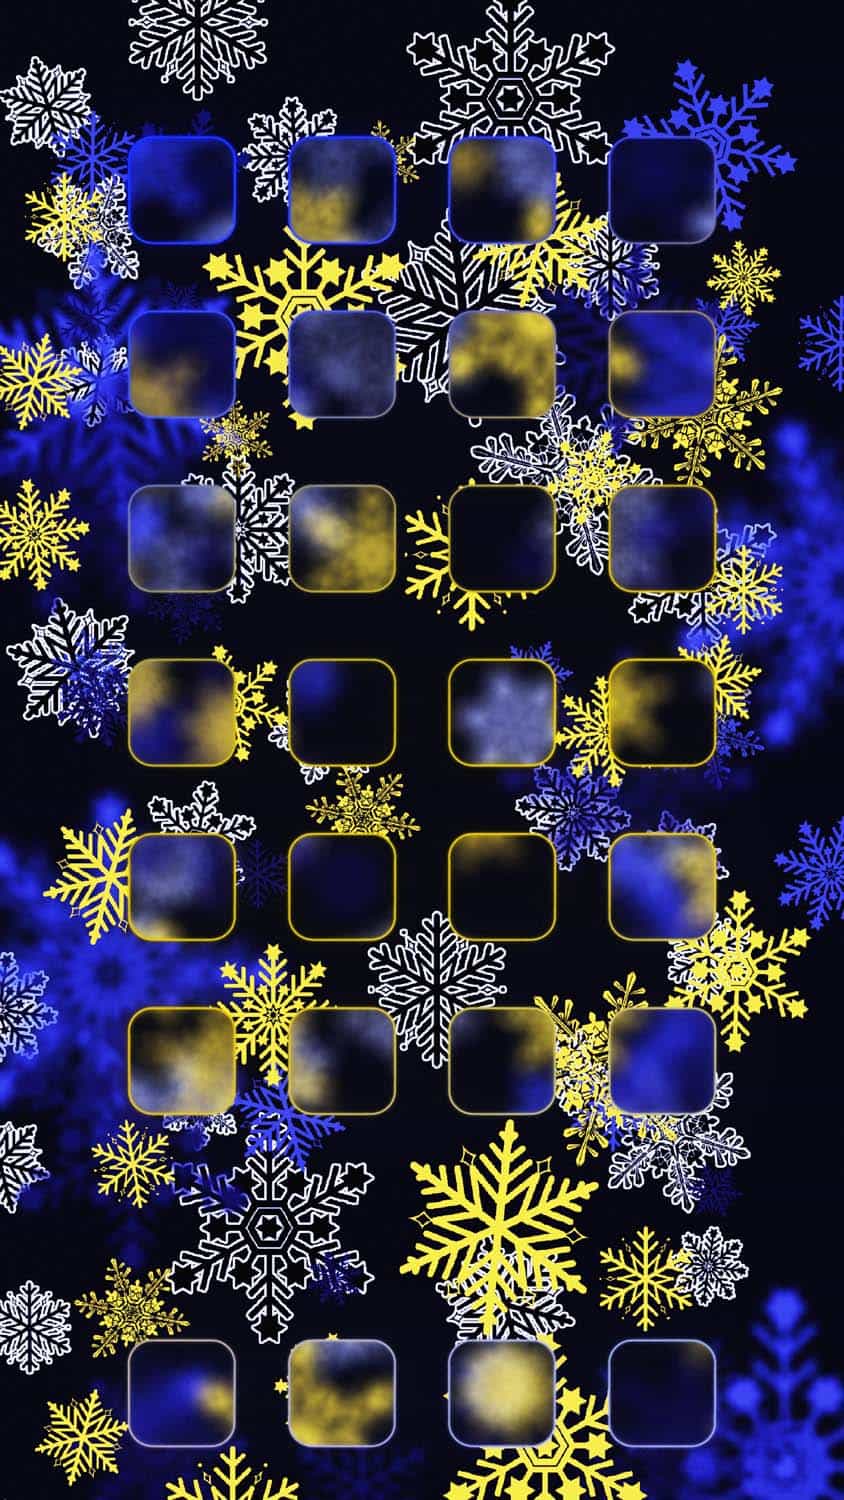 Winter iOS App Dock Background iPhone Wallpaper